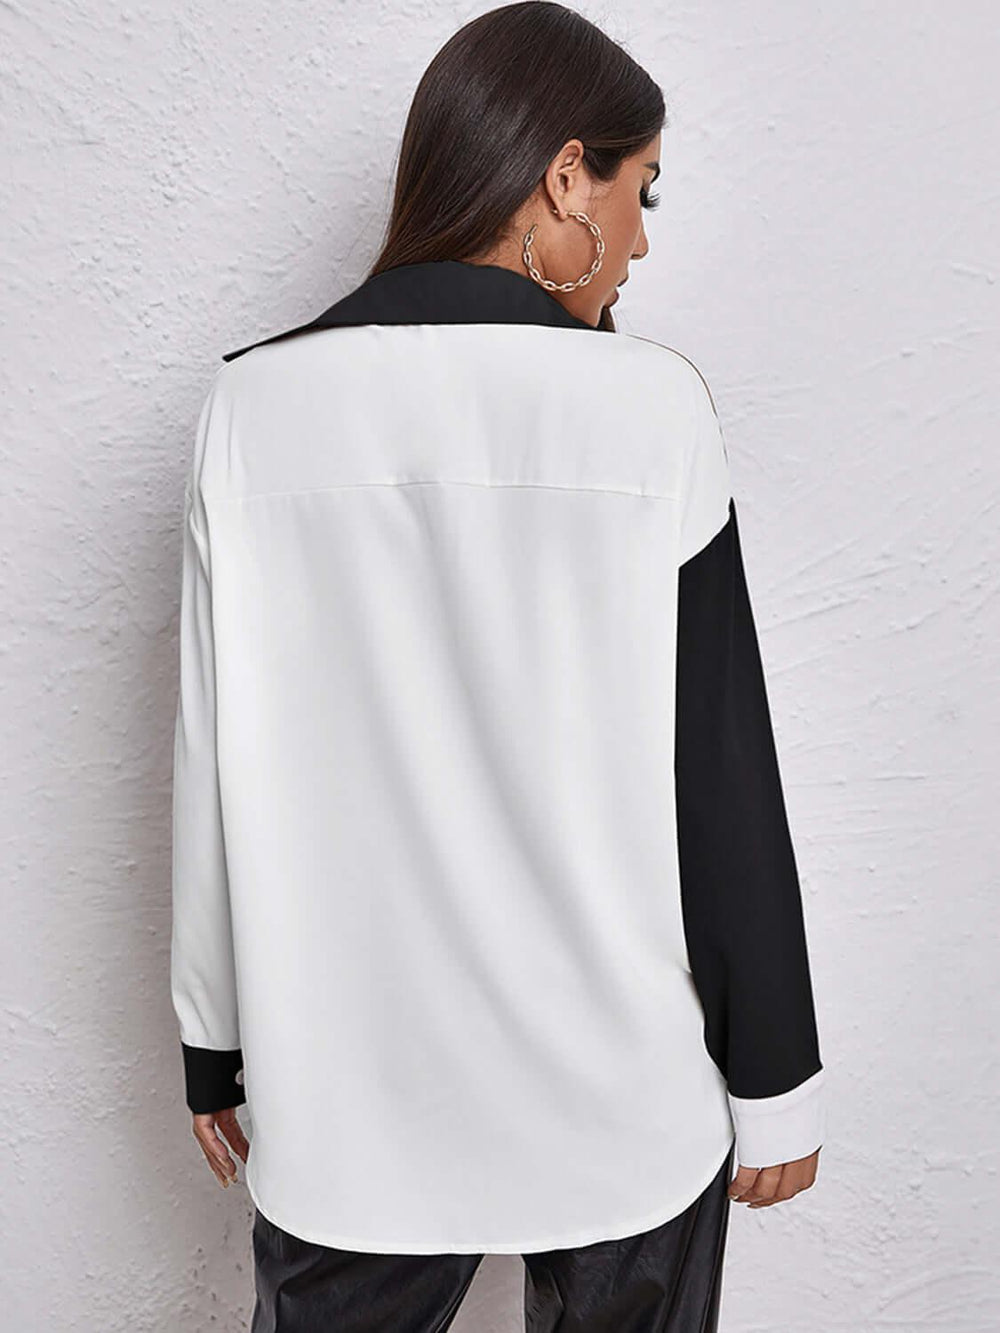 Contrast Dropped Shoulder Long Sleeve Shirt Design - Samslivos